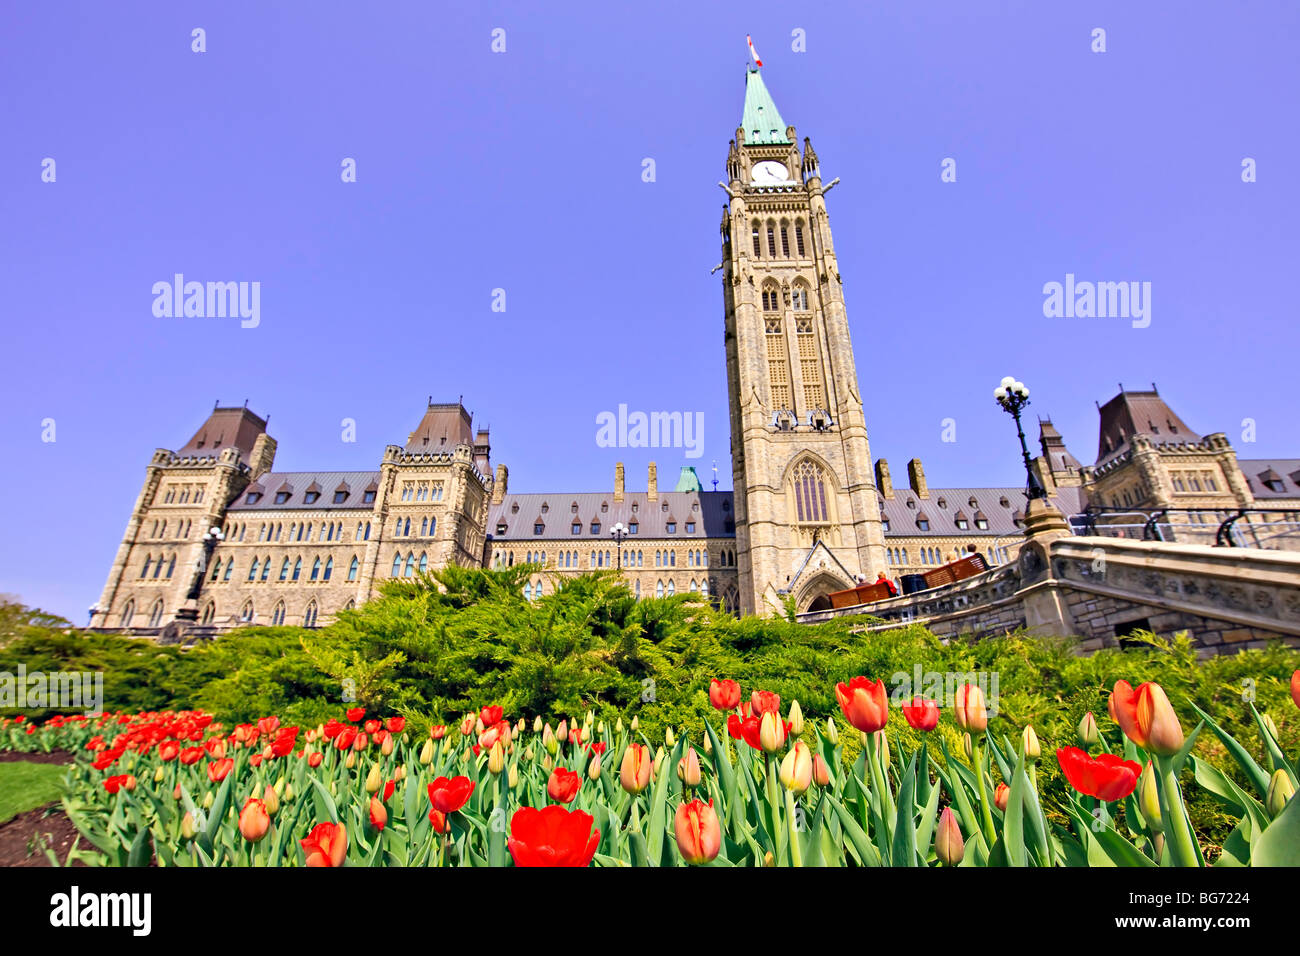 Block und Peace Tower Parlamentsgebäude und einen Garten von Tulpen auf Parliament Hill, Stadt von Ottawa, Ontario, Kanada kann Zentrum Stockfoto